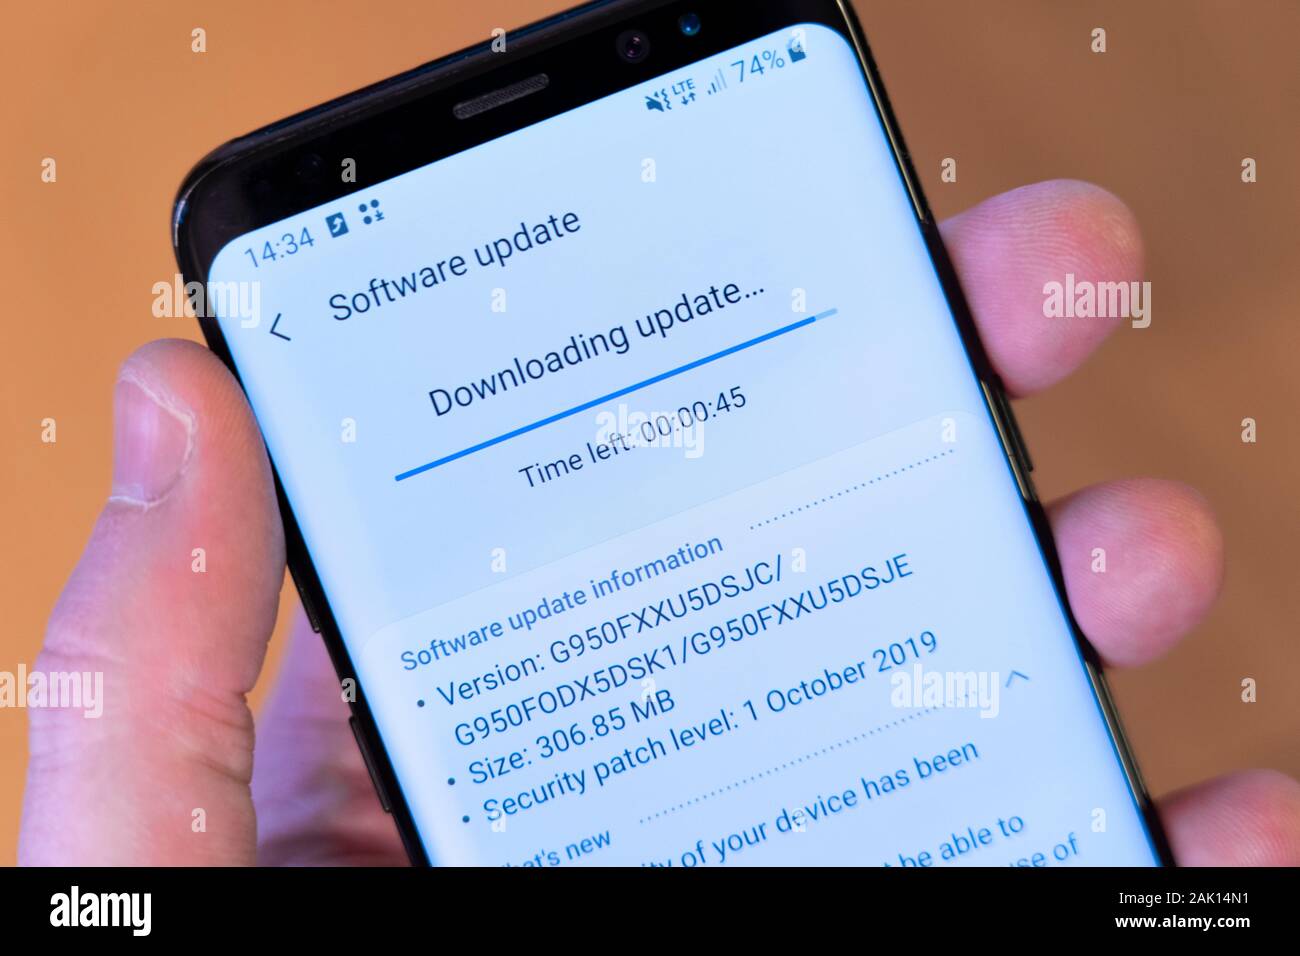 Un smartphone Galaxy S8 tenu dans la main d'un homme et téléchargeant une mise à jour du système d'exploitation Android et un correctif de sécurité Banque D'Images